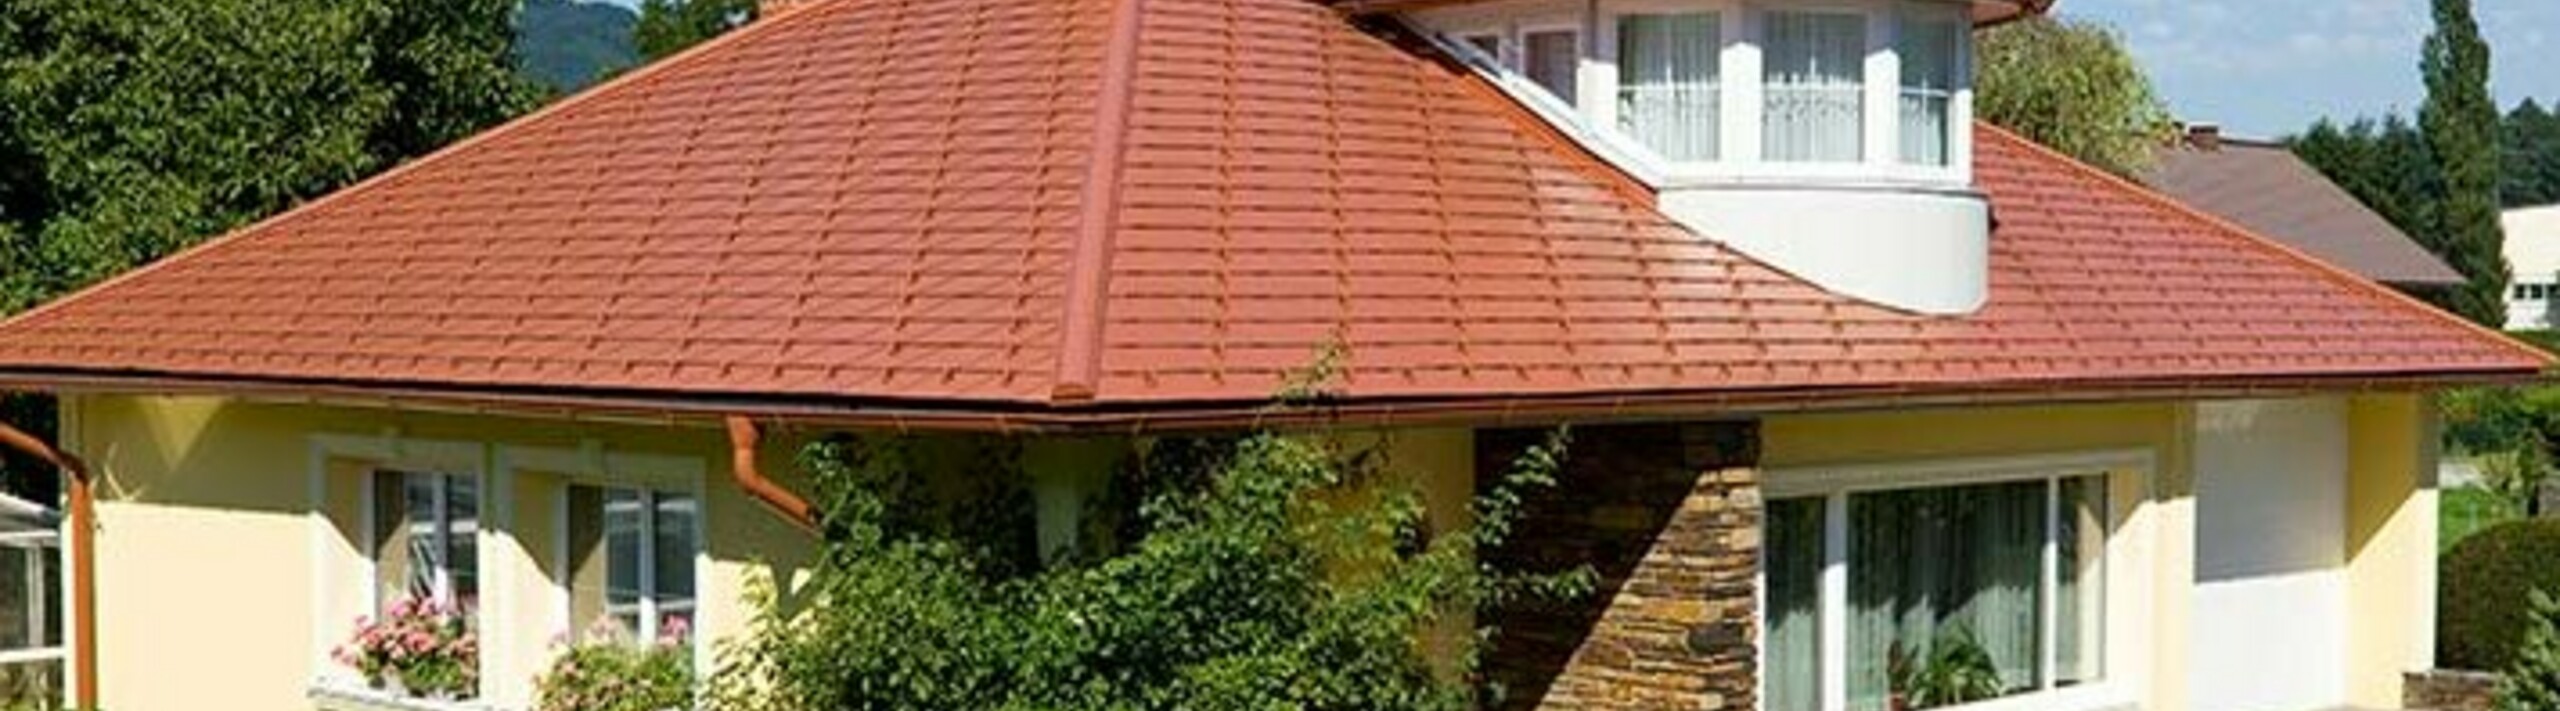 Eengezinswoning met schilddak en dakkapel bedekt met de aluminium PREFA-dakschindel in dakpanlook, baksteenrood.